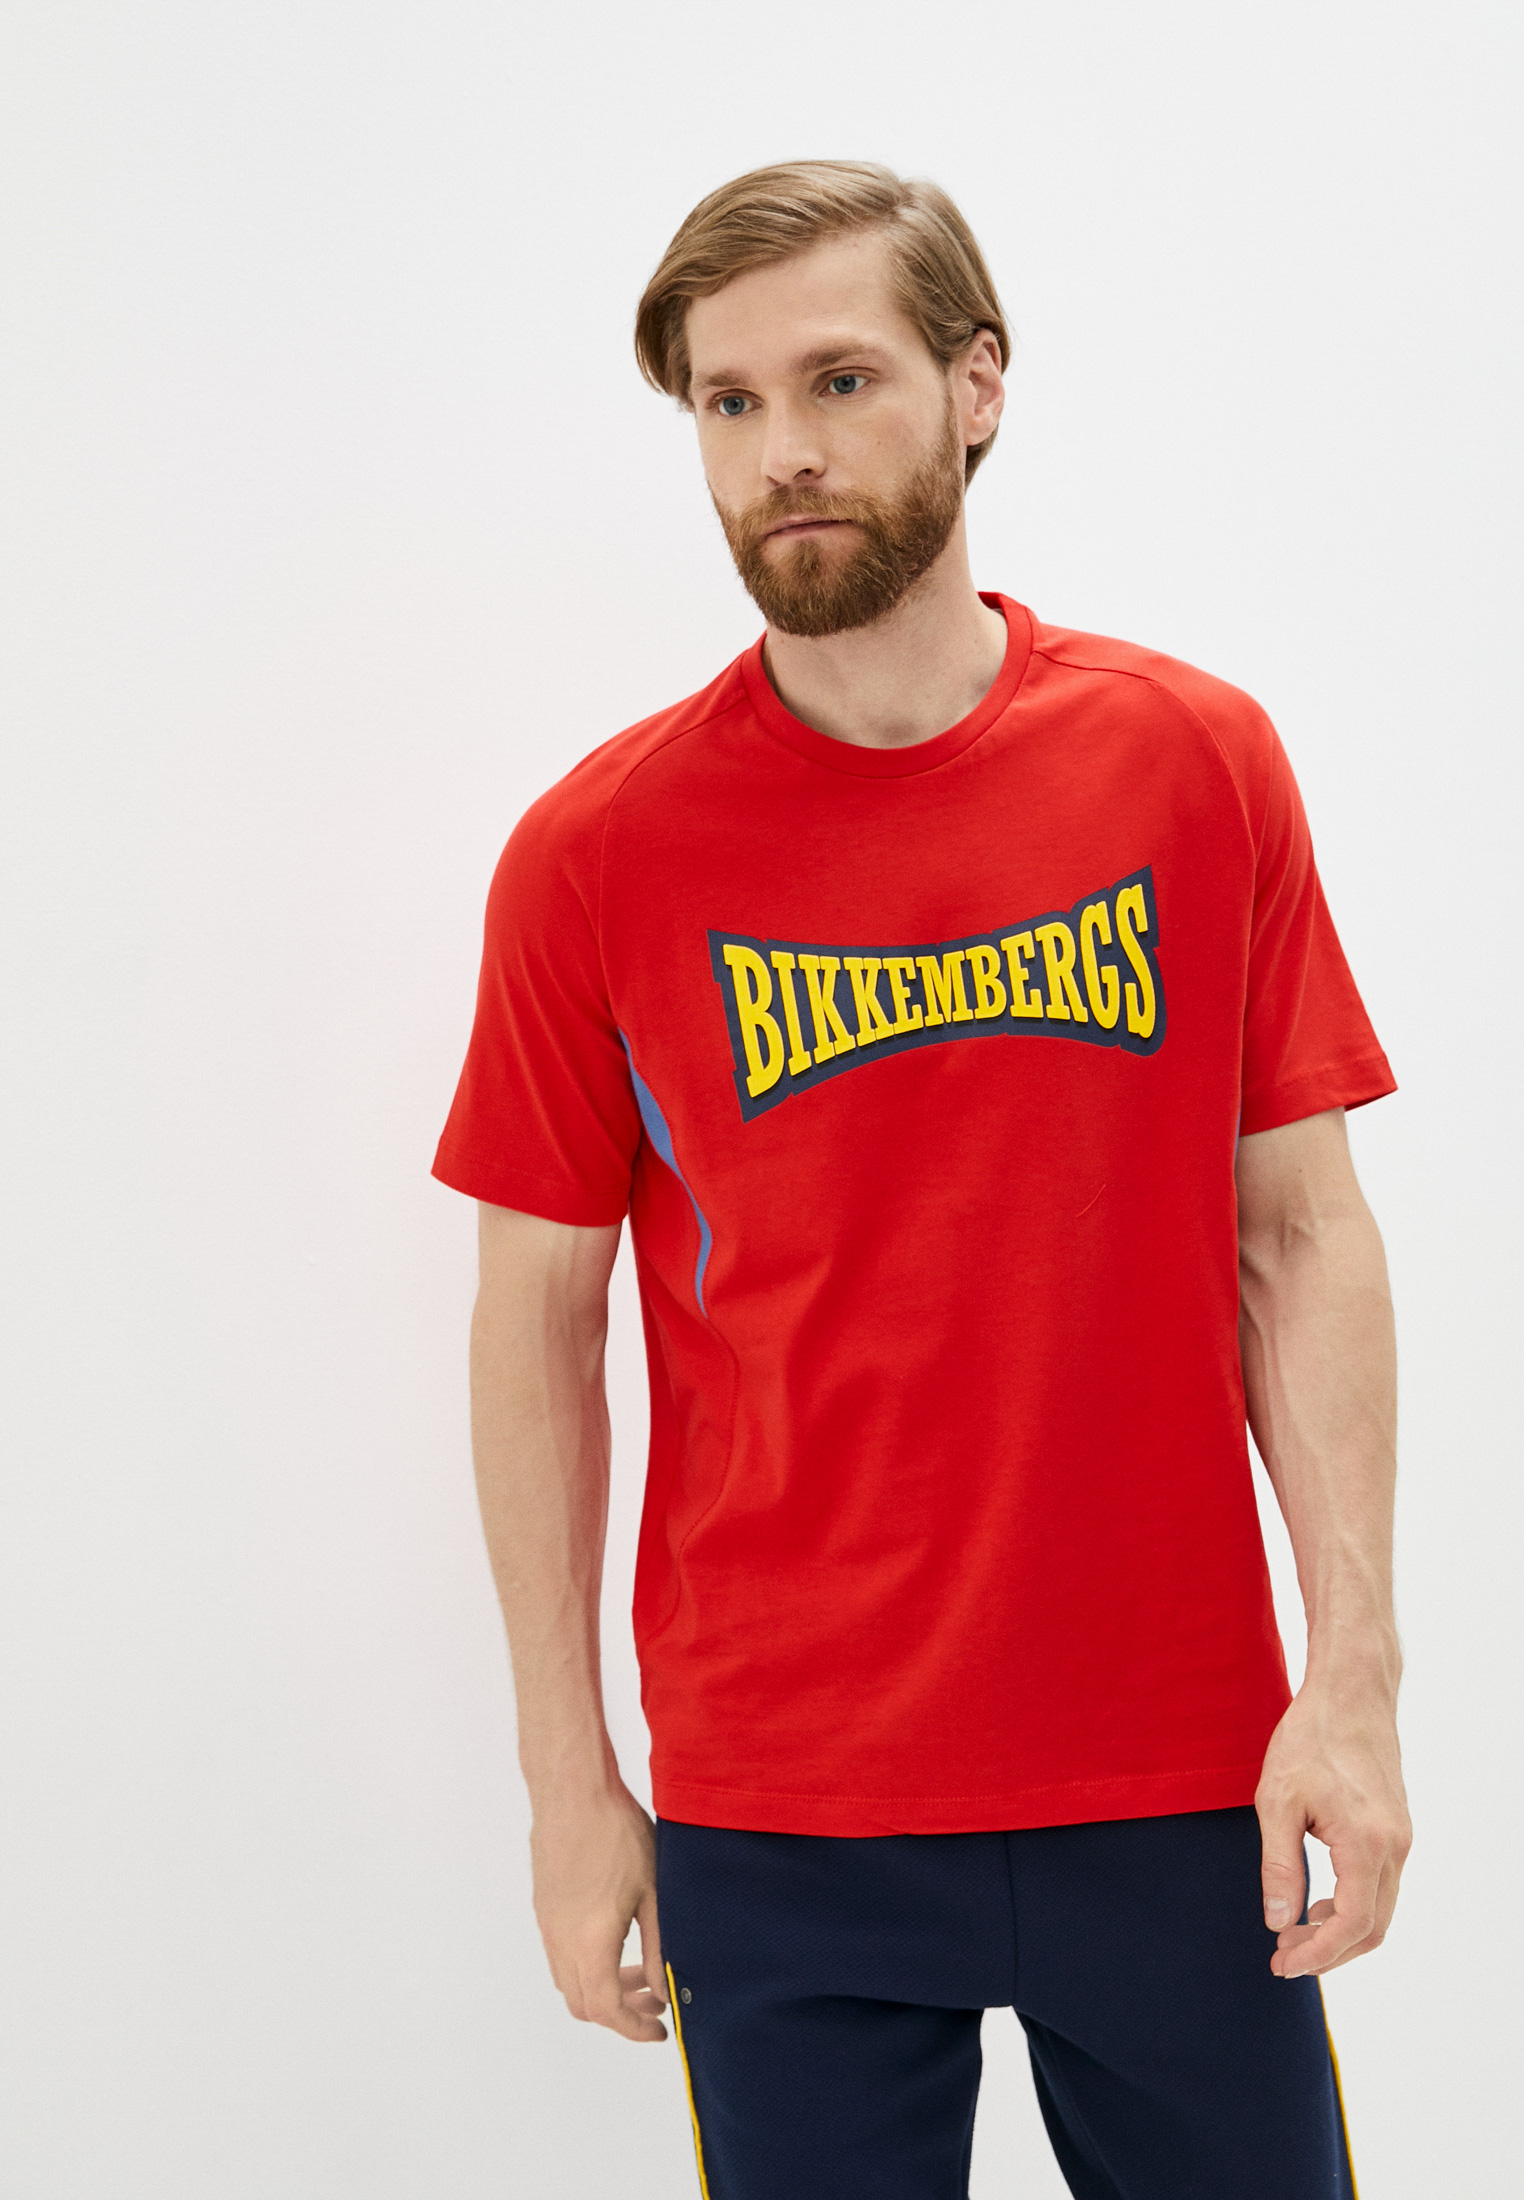 Мужская футболка Bikkembergs (Биккембергс) C 4 117 01 M 4298: изображение 1